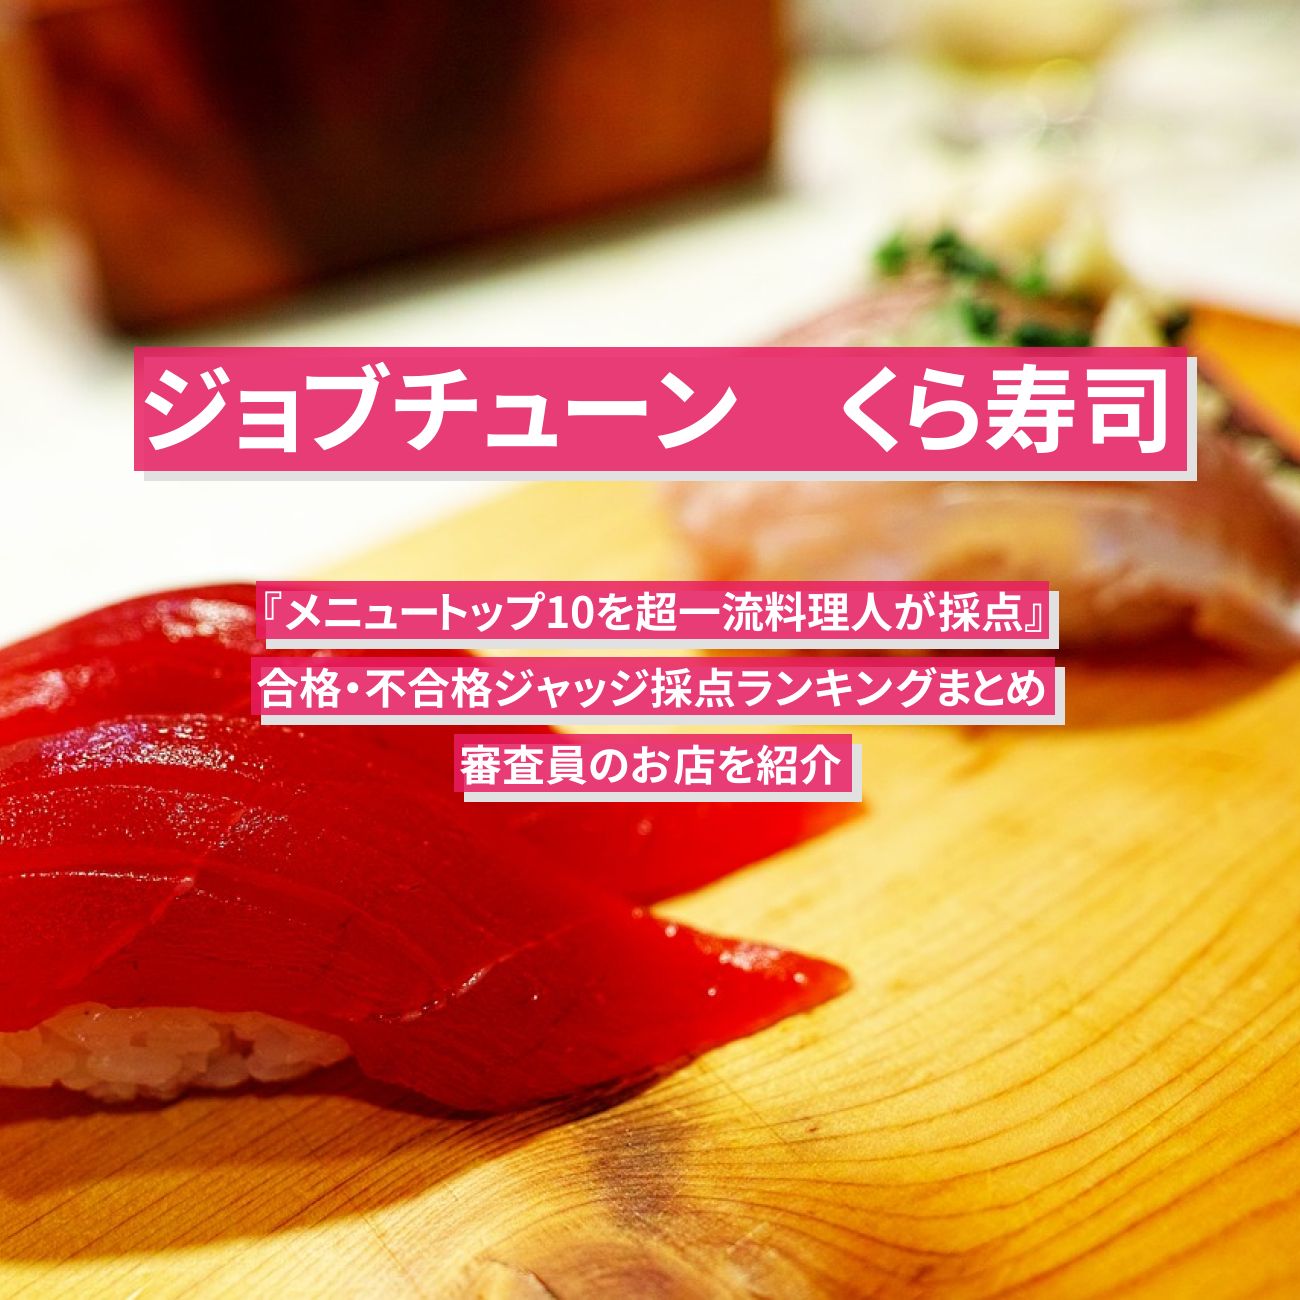 【ジョブチューン】くら寿司 の合格・不合格ジャッジ採点結果ランキングまとめ・審査員のお店を紹介『メニュートップ10を超一流料理人が採点』